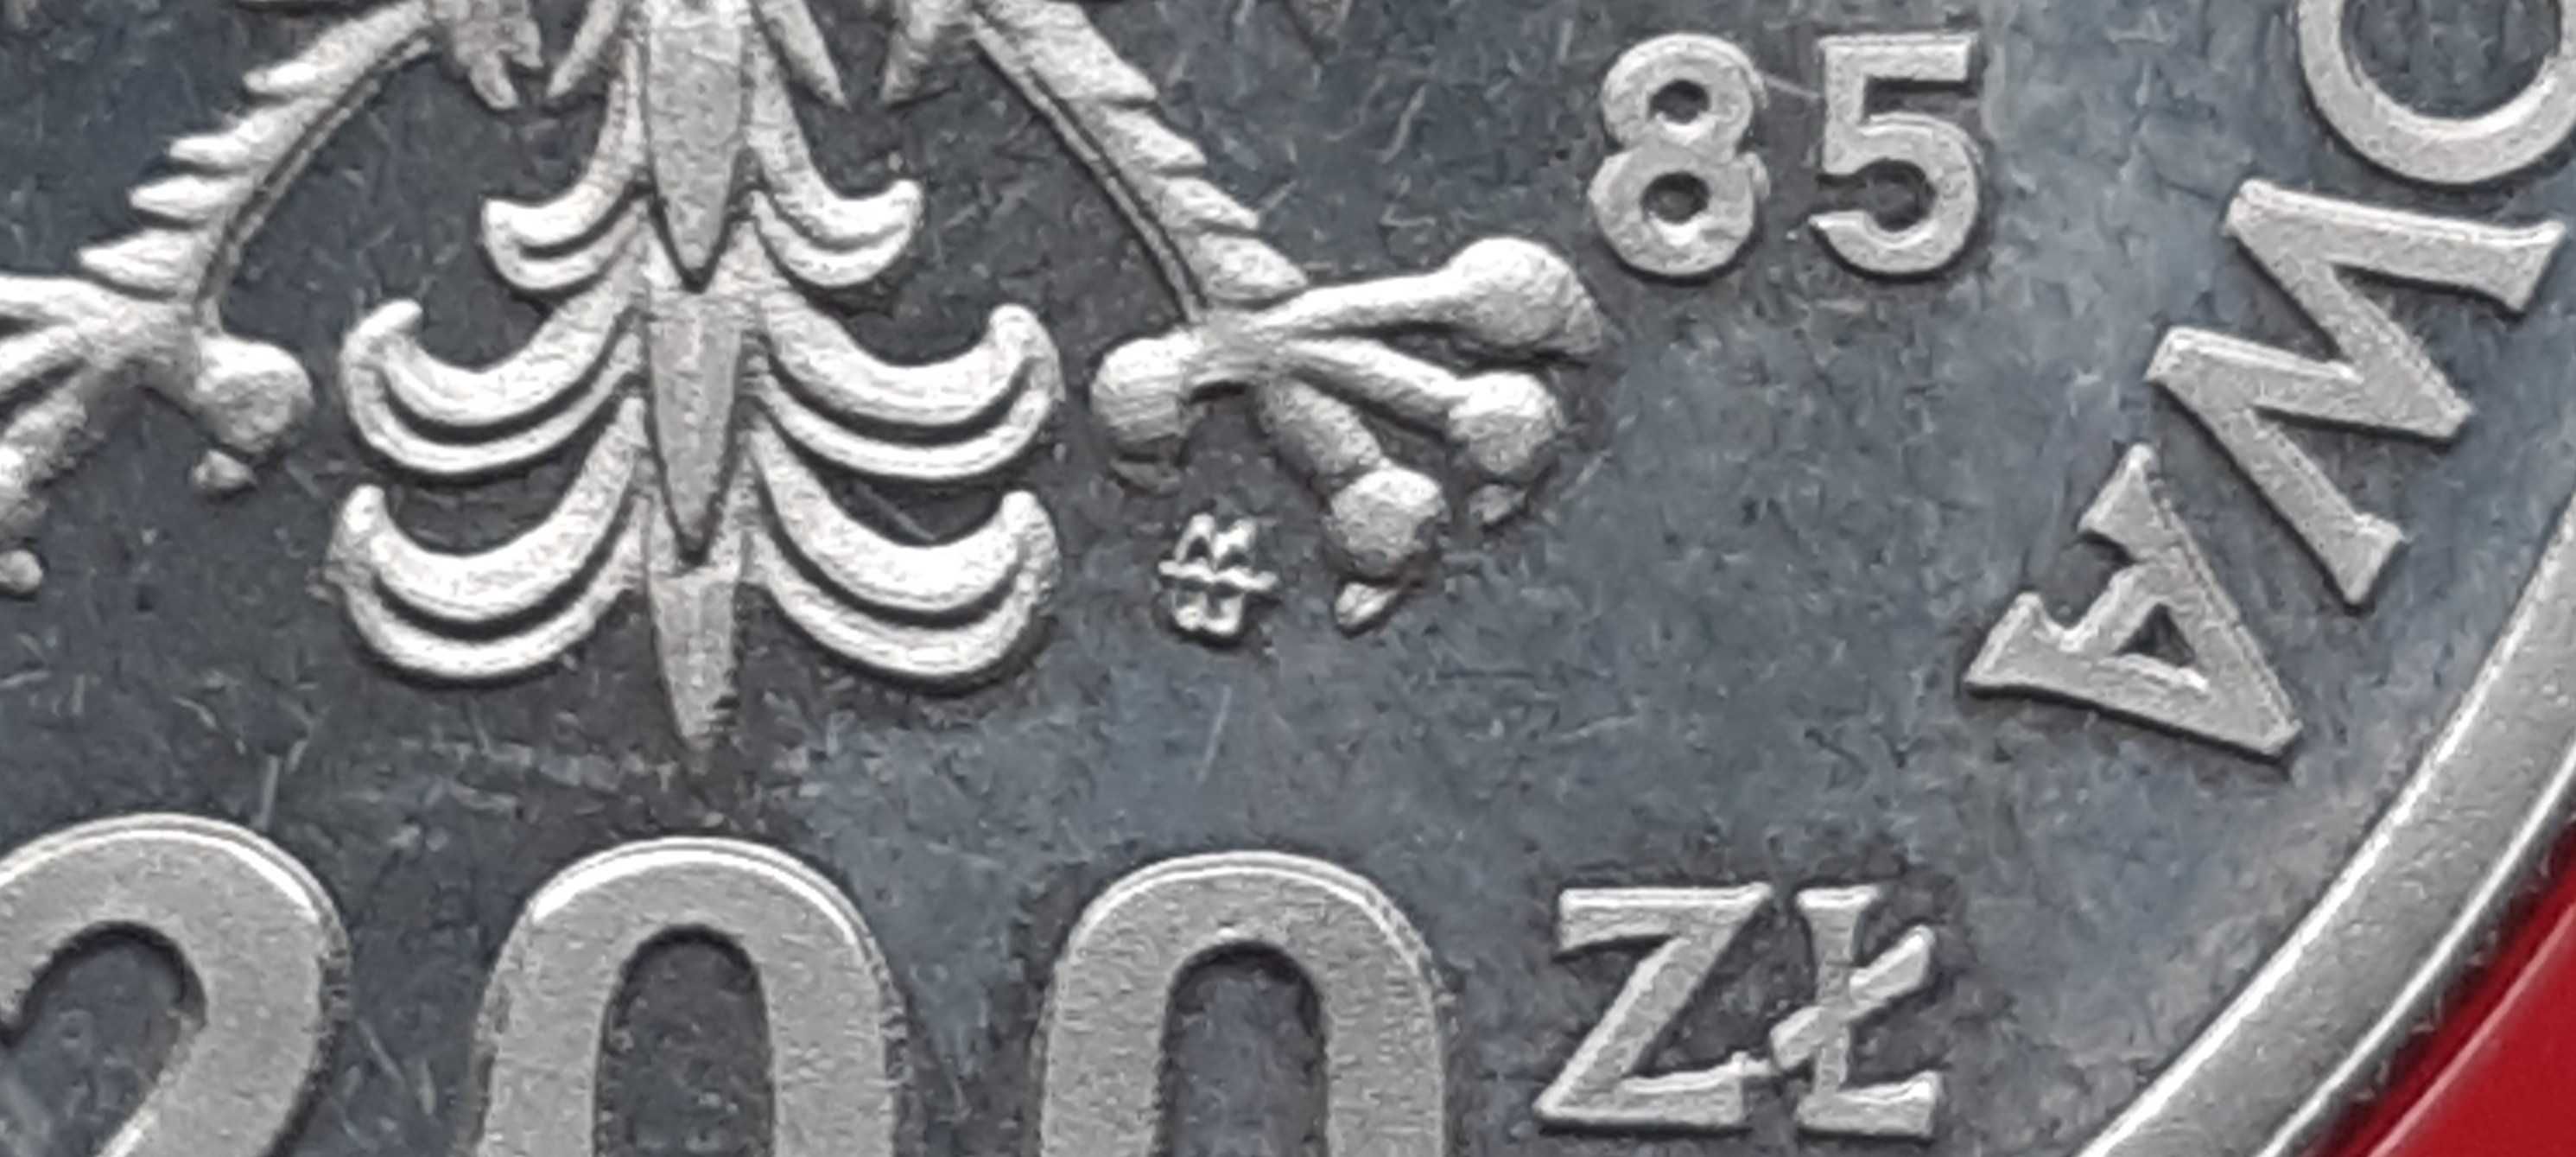 200 zł 1985 Pomnik Szpital Centrum Zdrowia Matki Polki próba FeNi